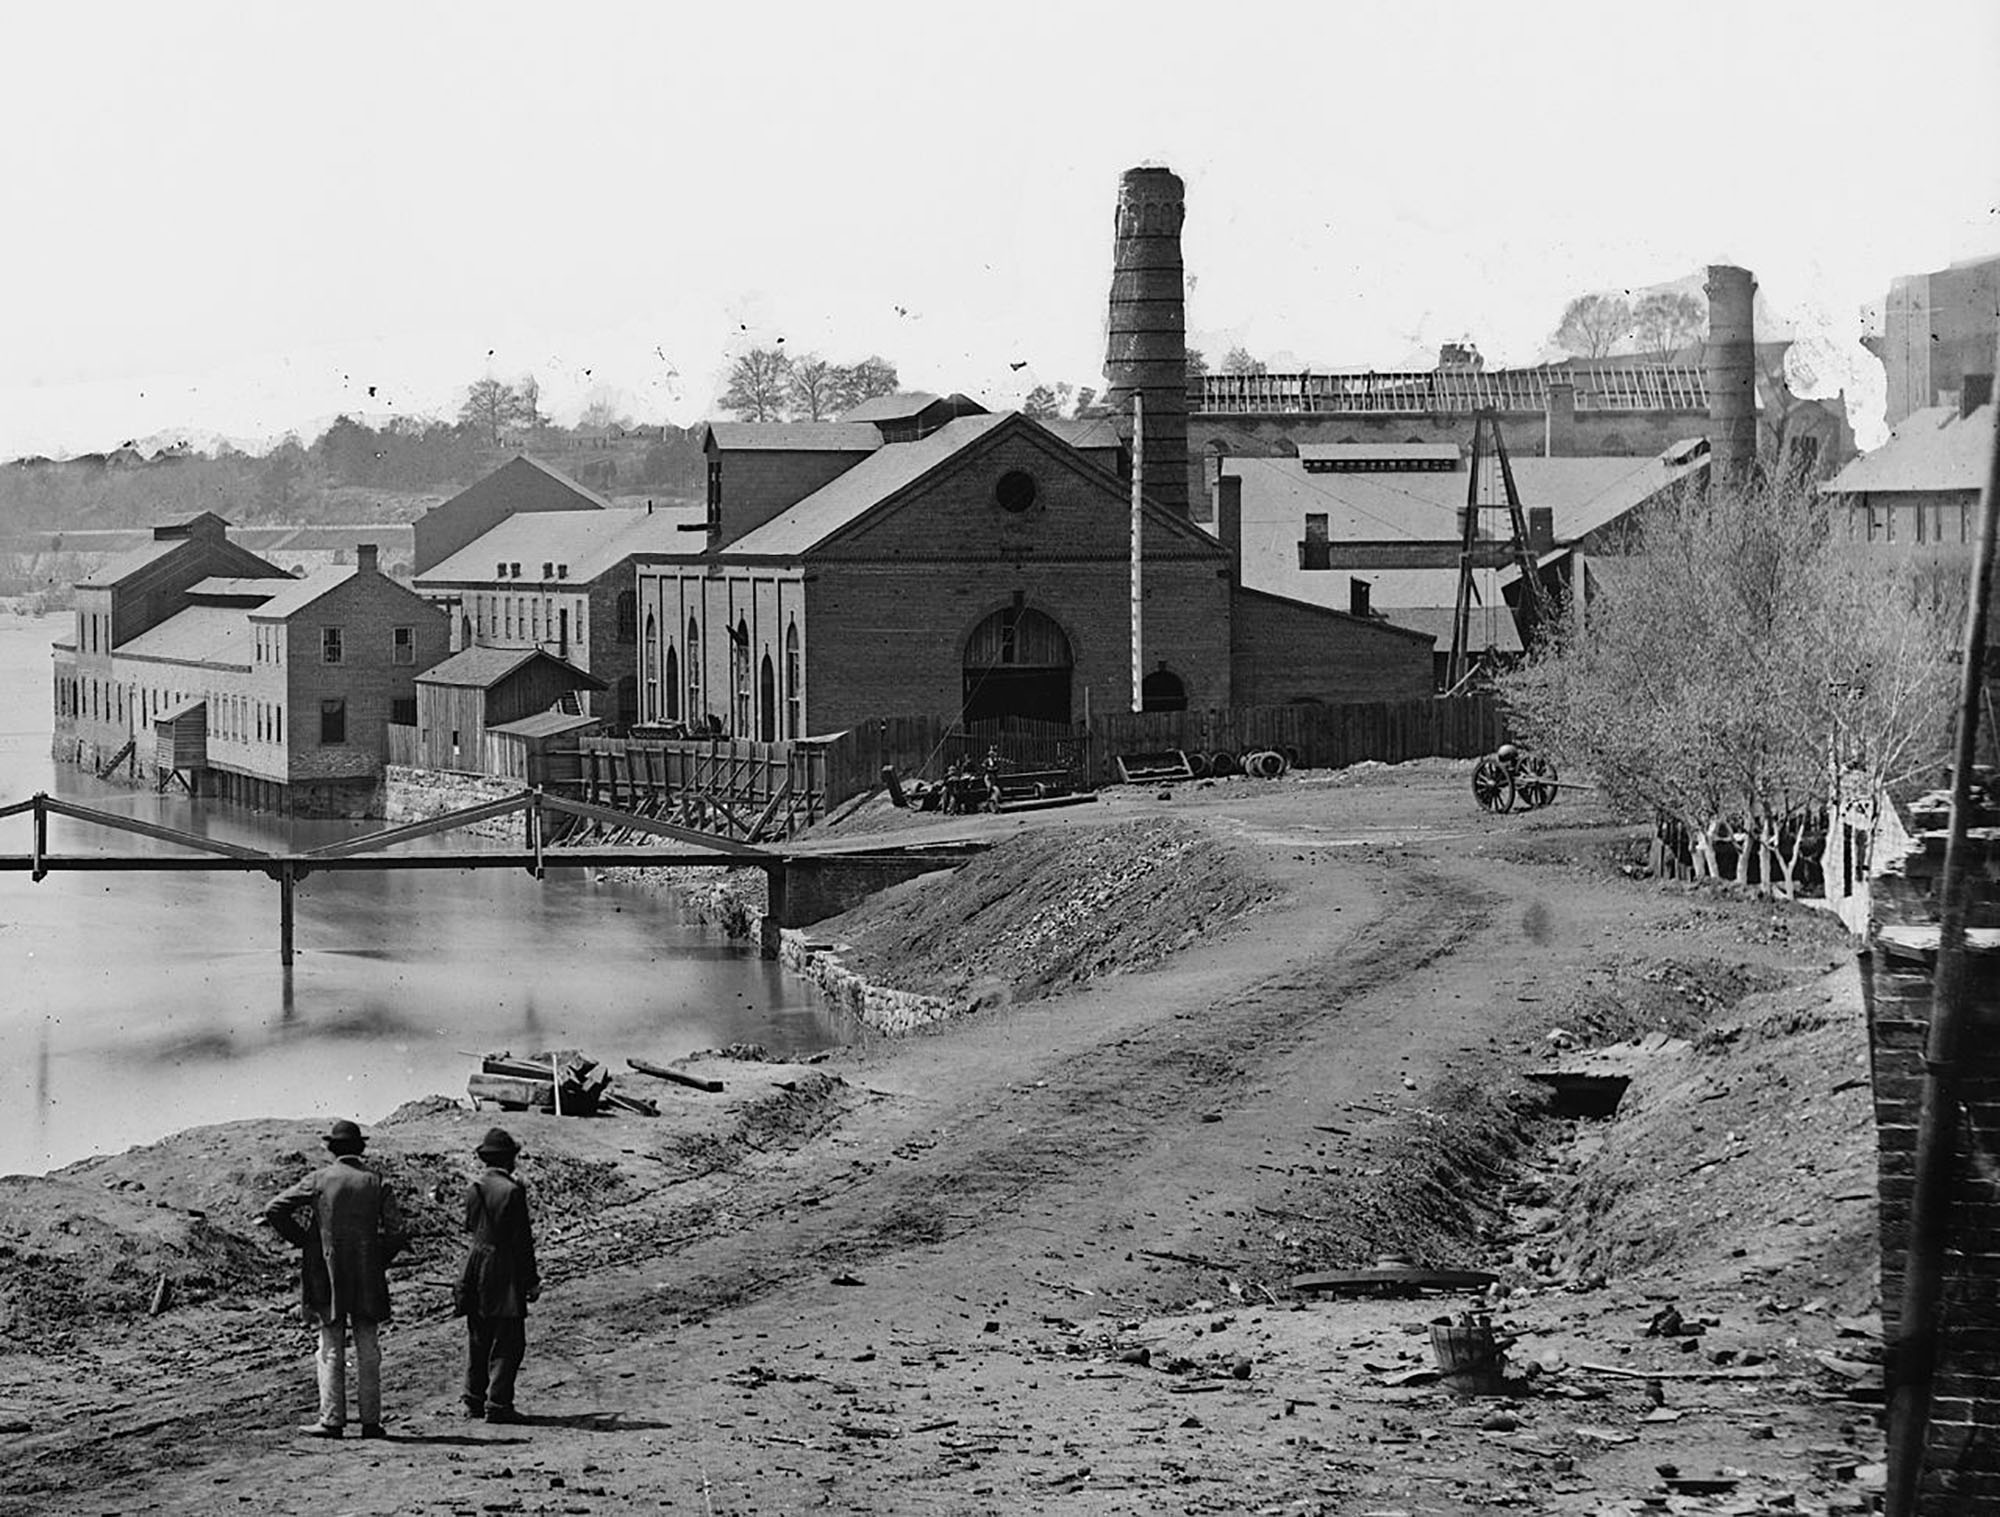 Tredegar Iron Works, 1865, photo by Alexander Gardner